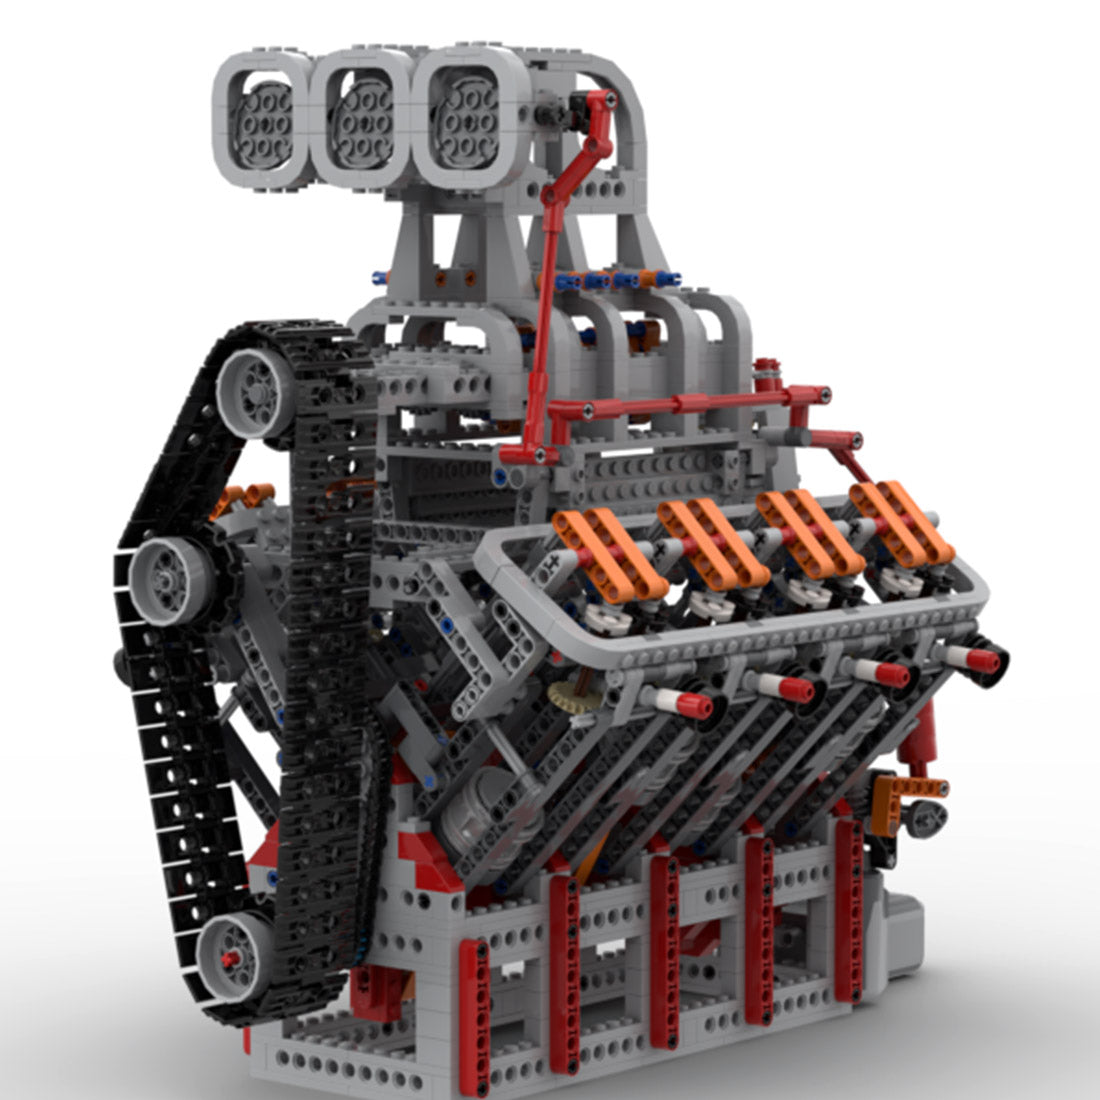 OHV 5.0LV8 General Motors Engine